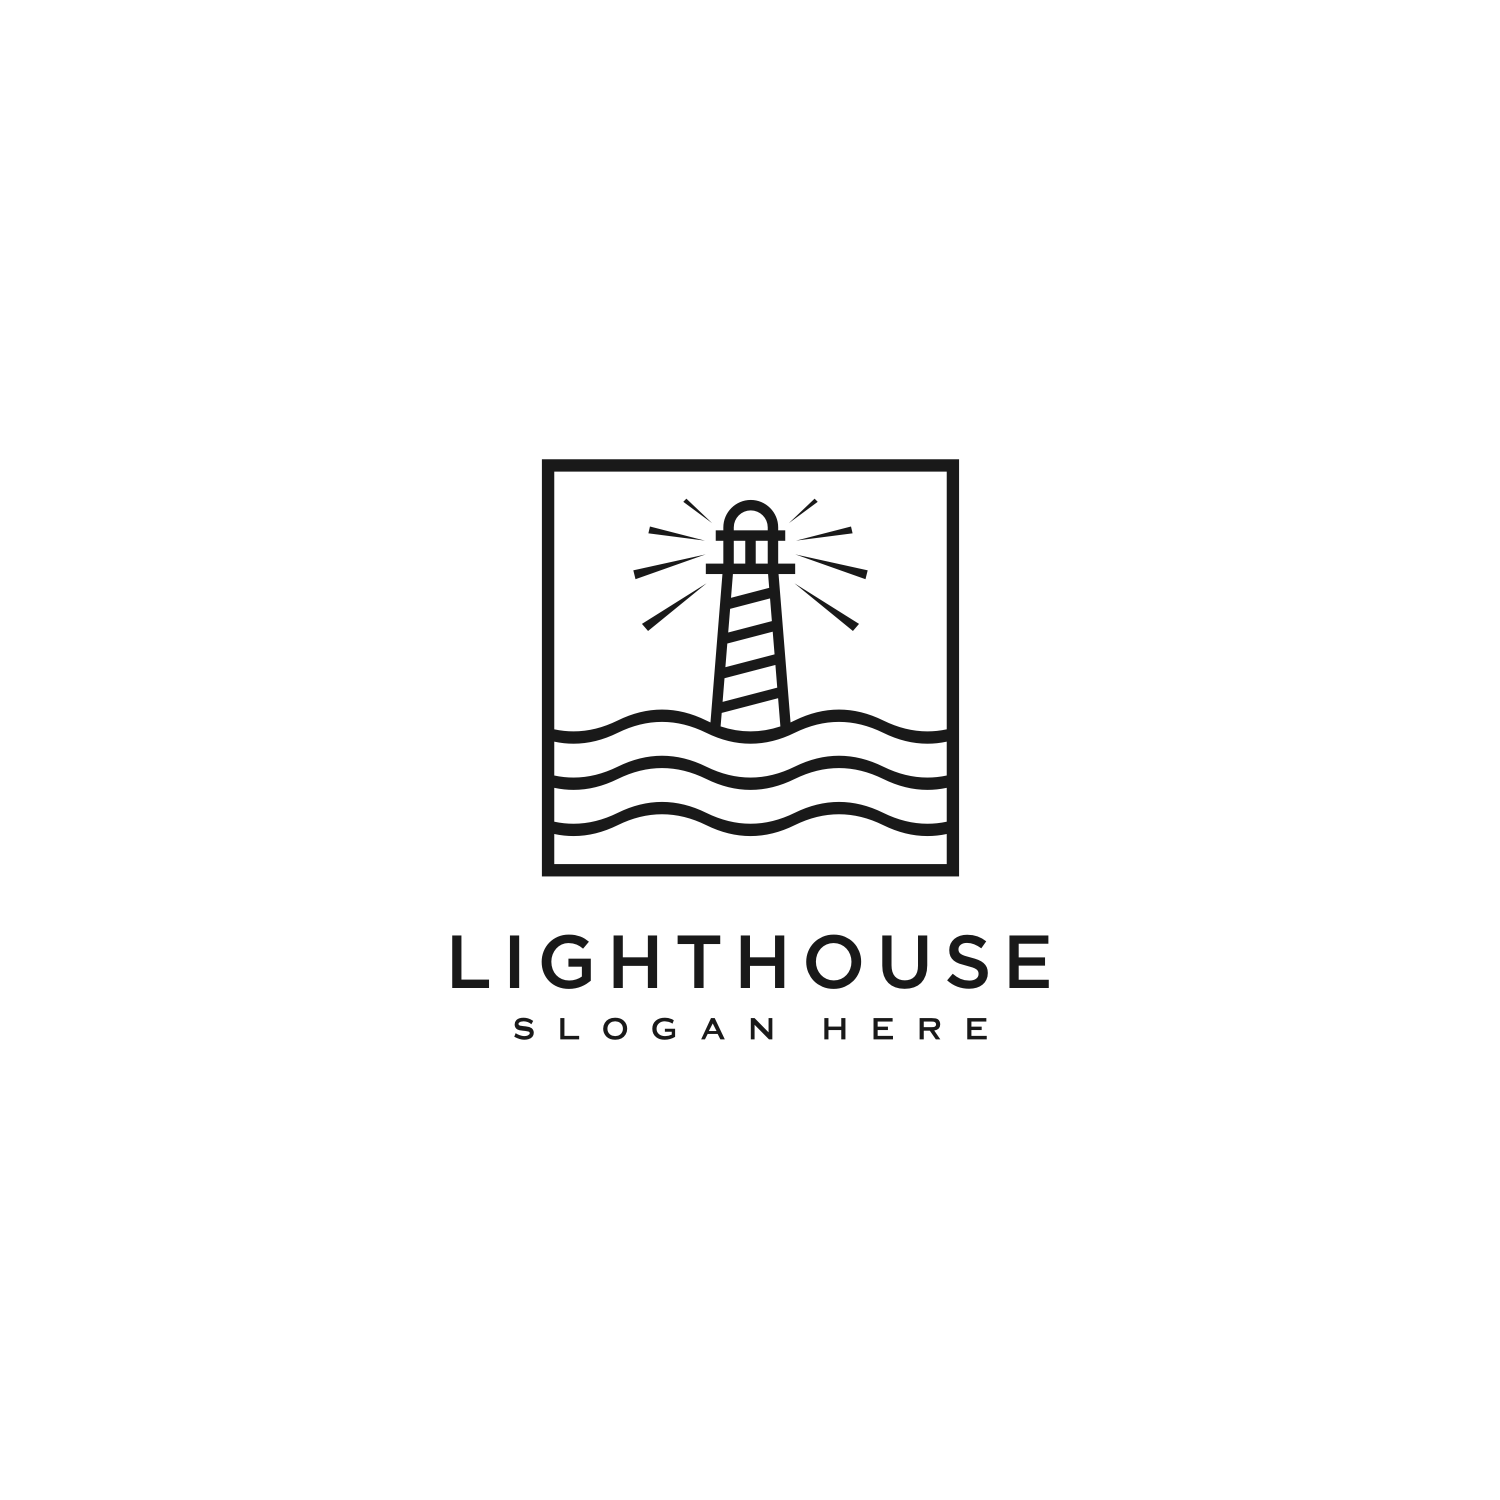 3 Lighthouse Logo Vector Designs